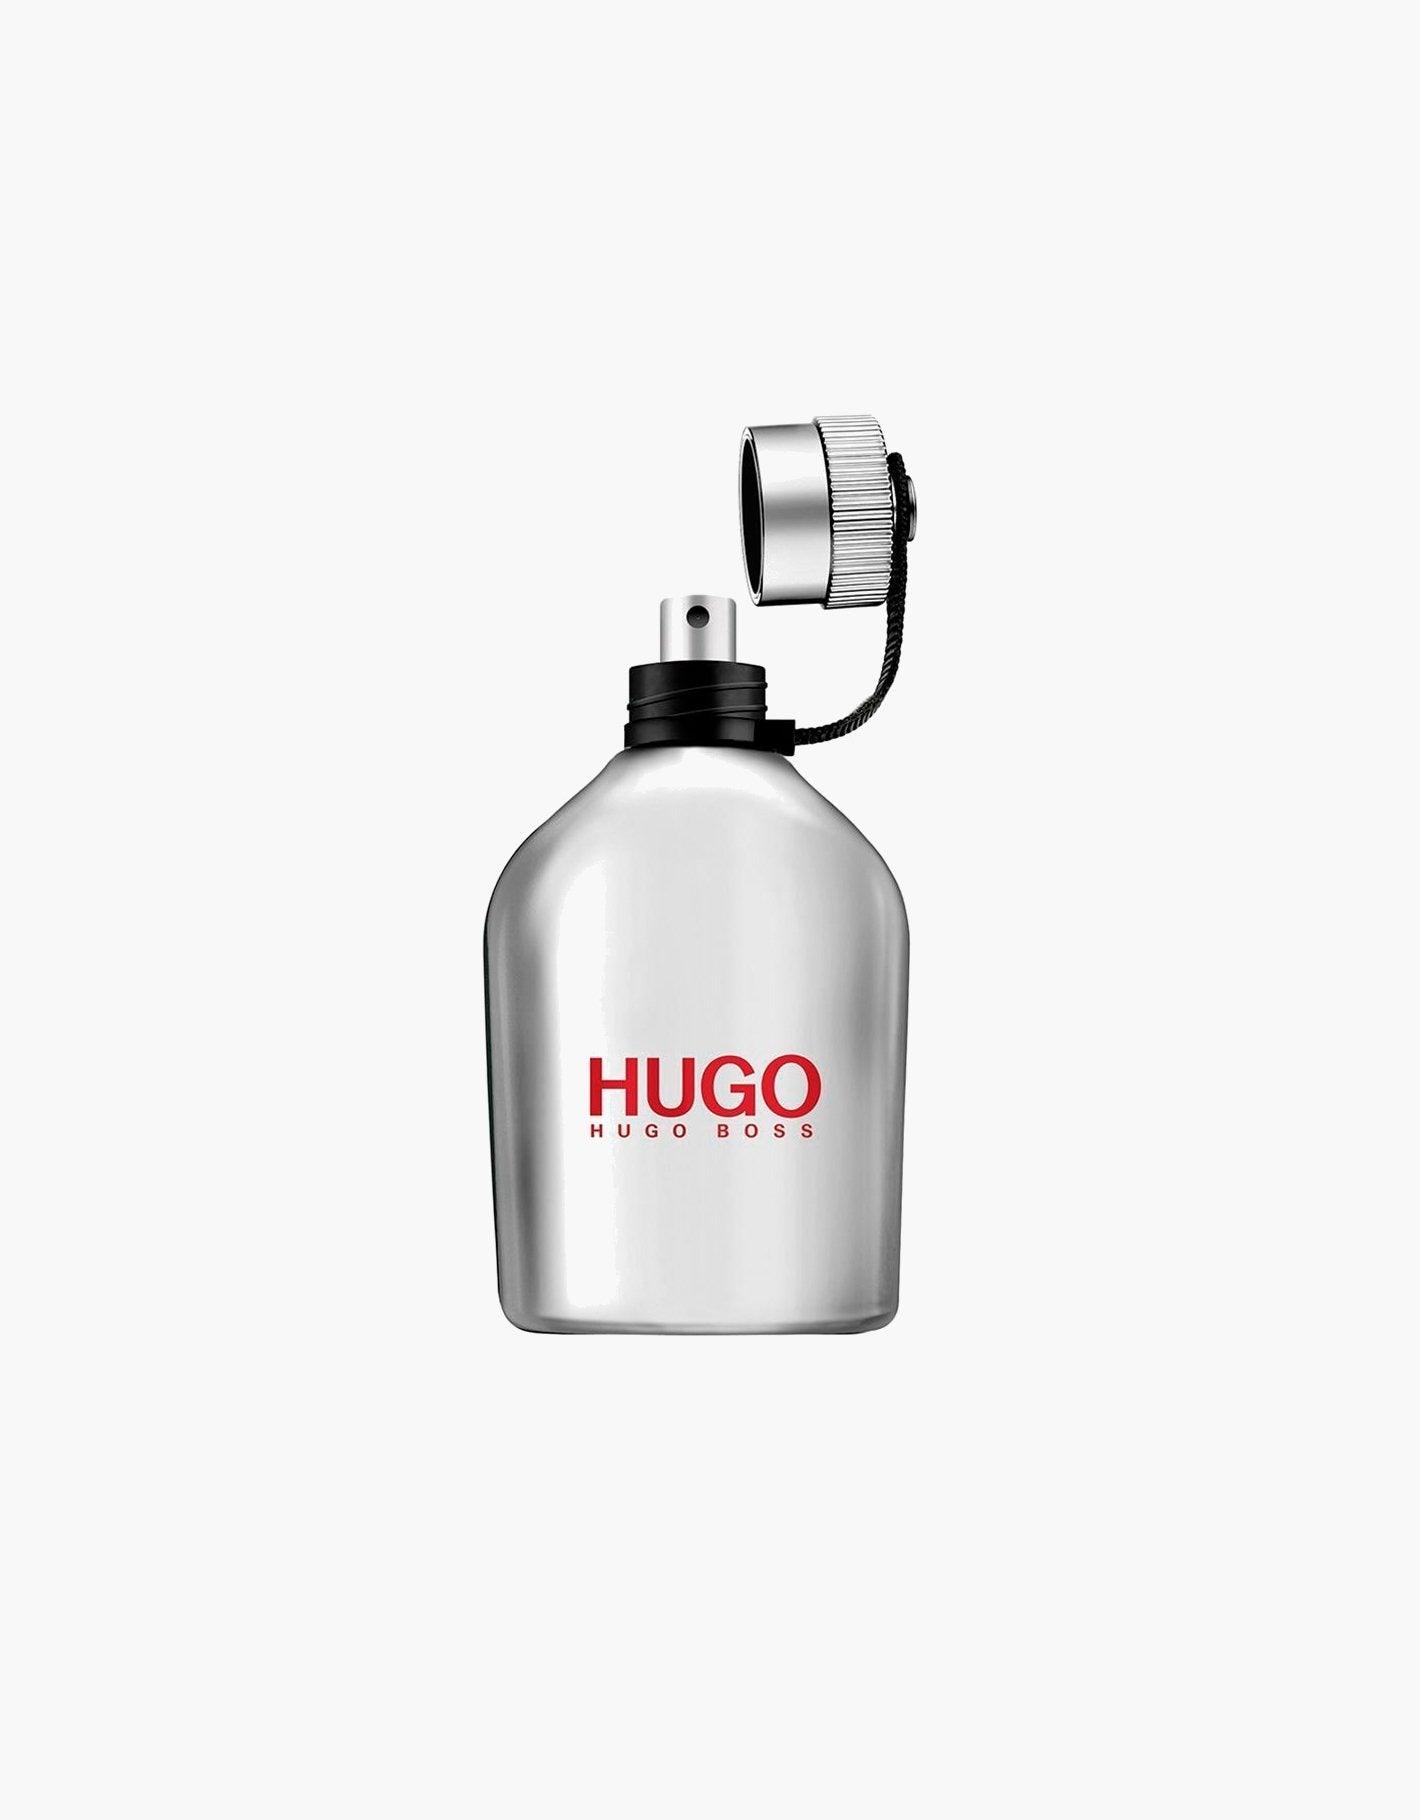 HUGO ICED 4.2oz - tiendadicons.com